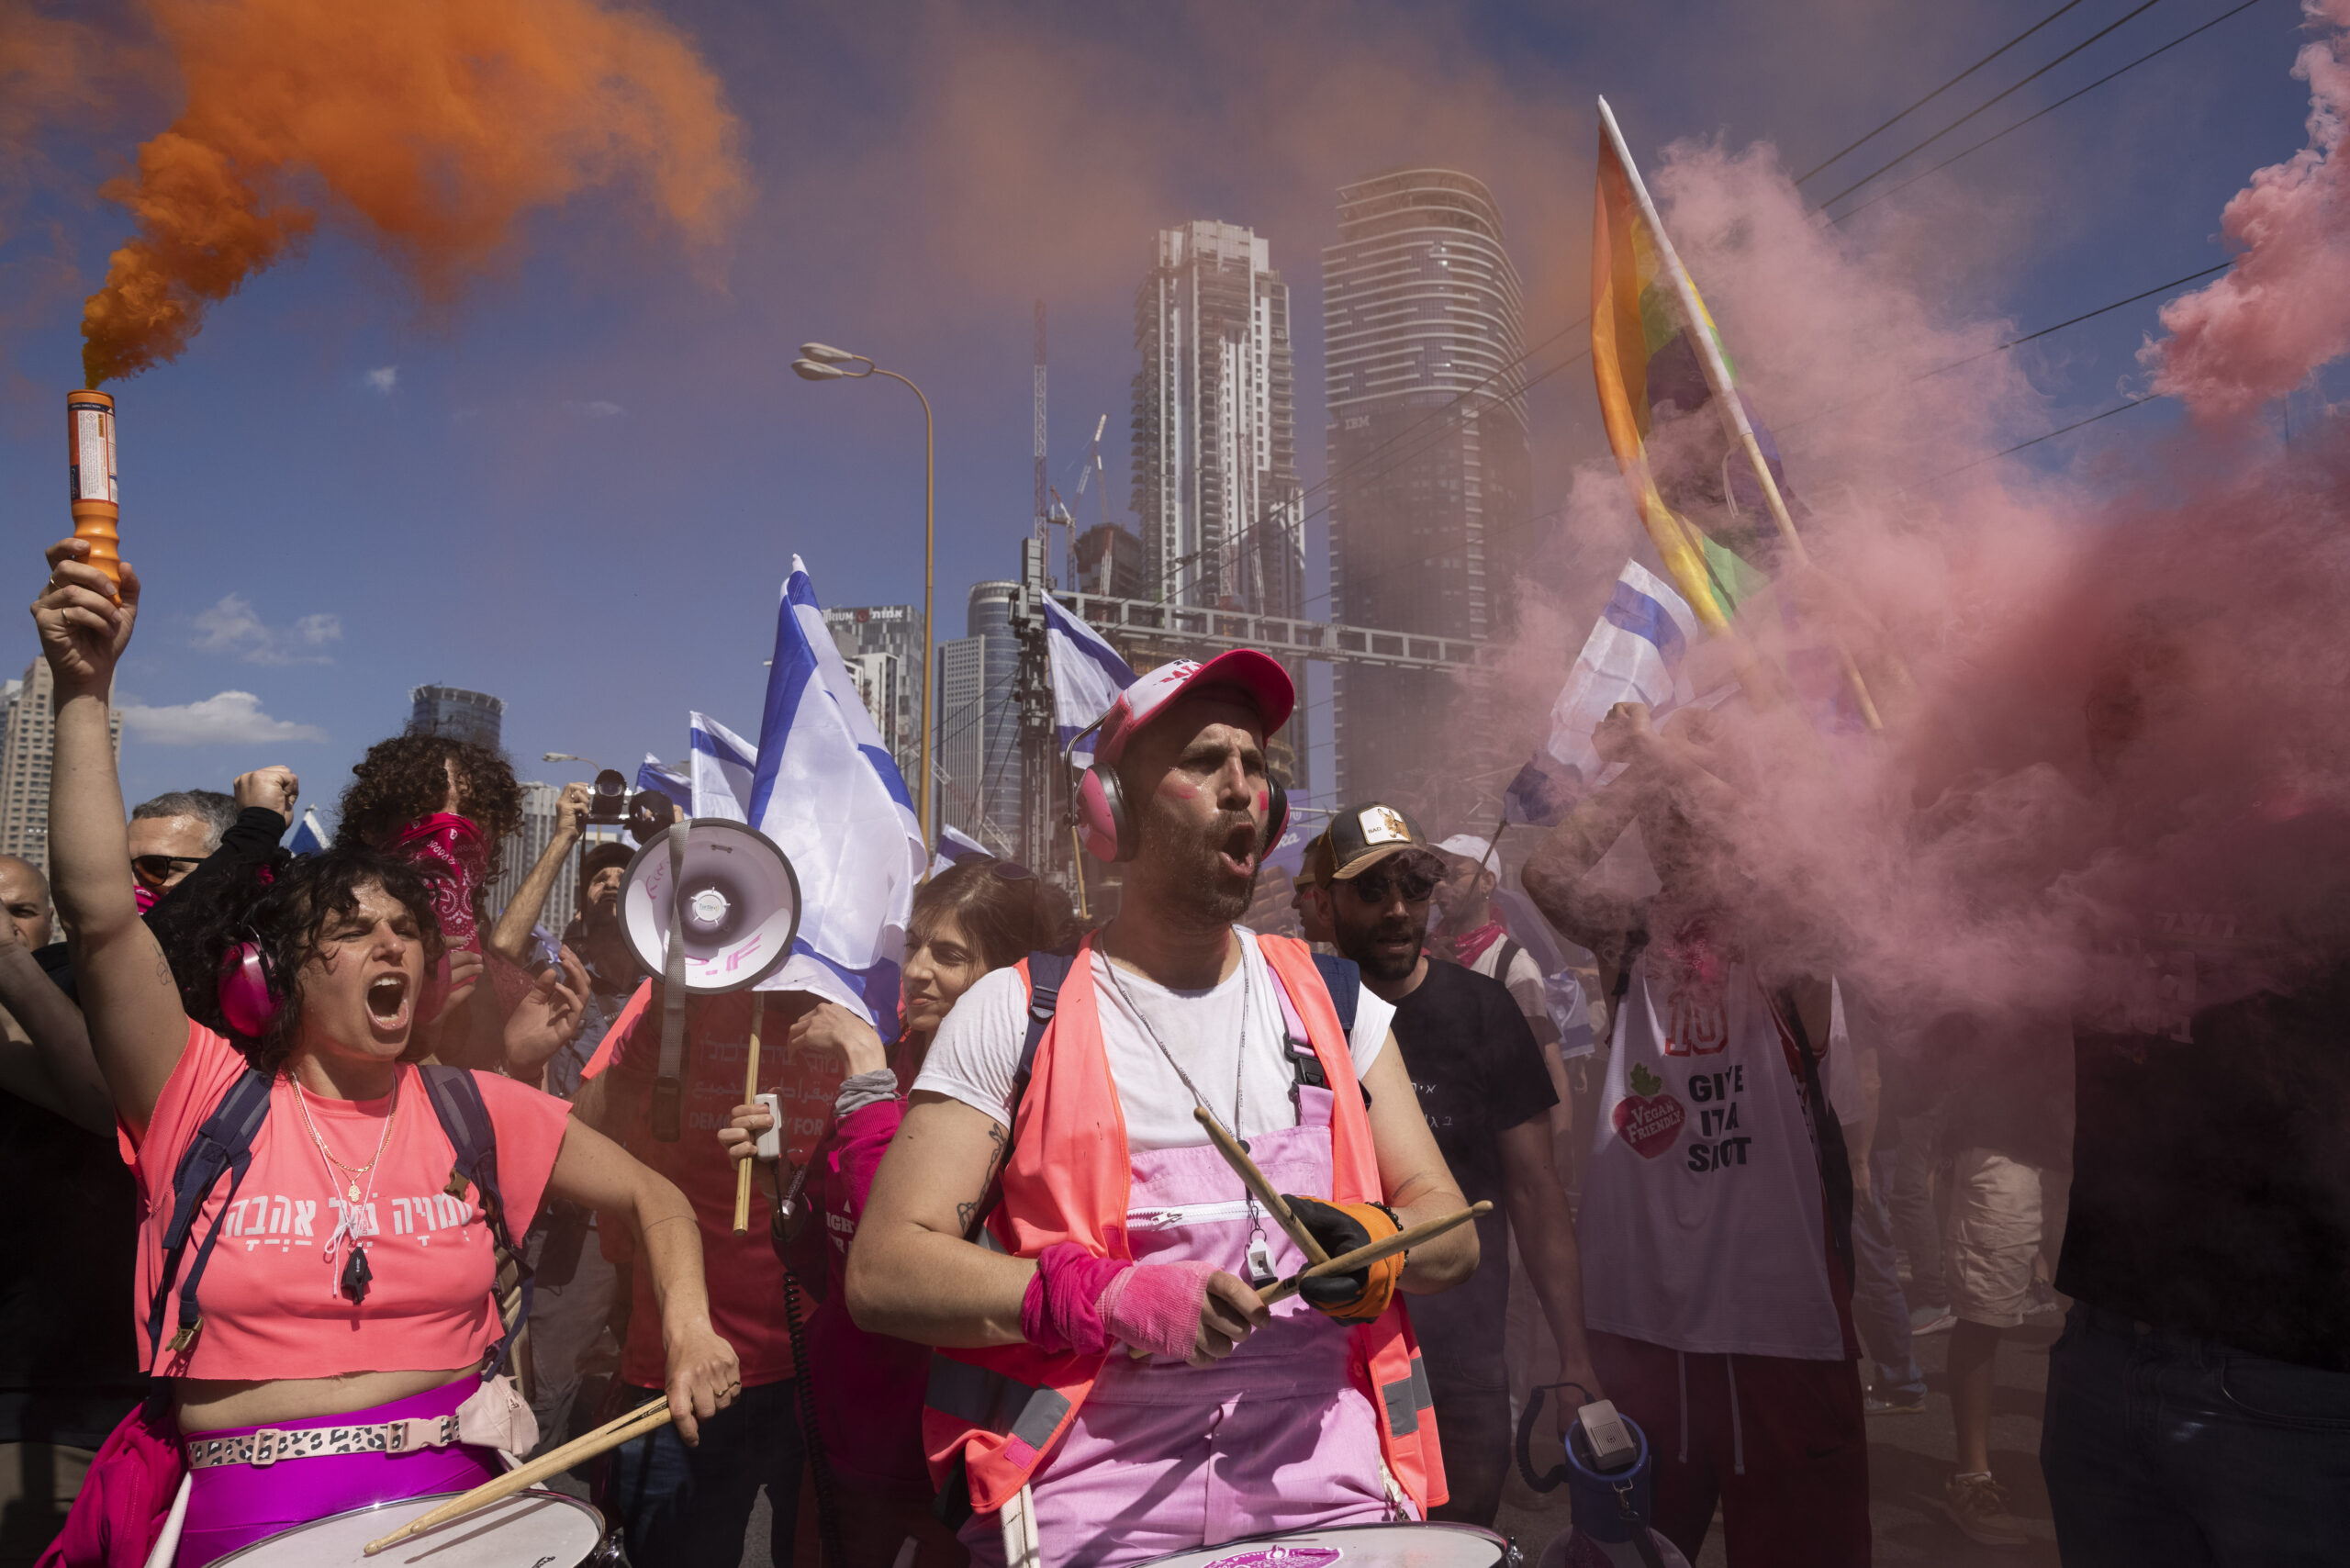 יניב סגל מהחזית הוורודה בהפגנה במרץ בתל אביב (צילום: אורן זיו)